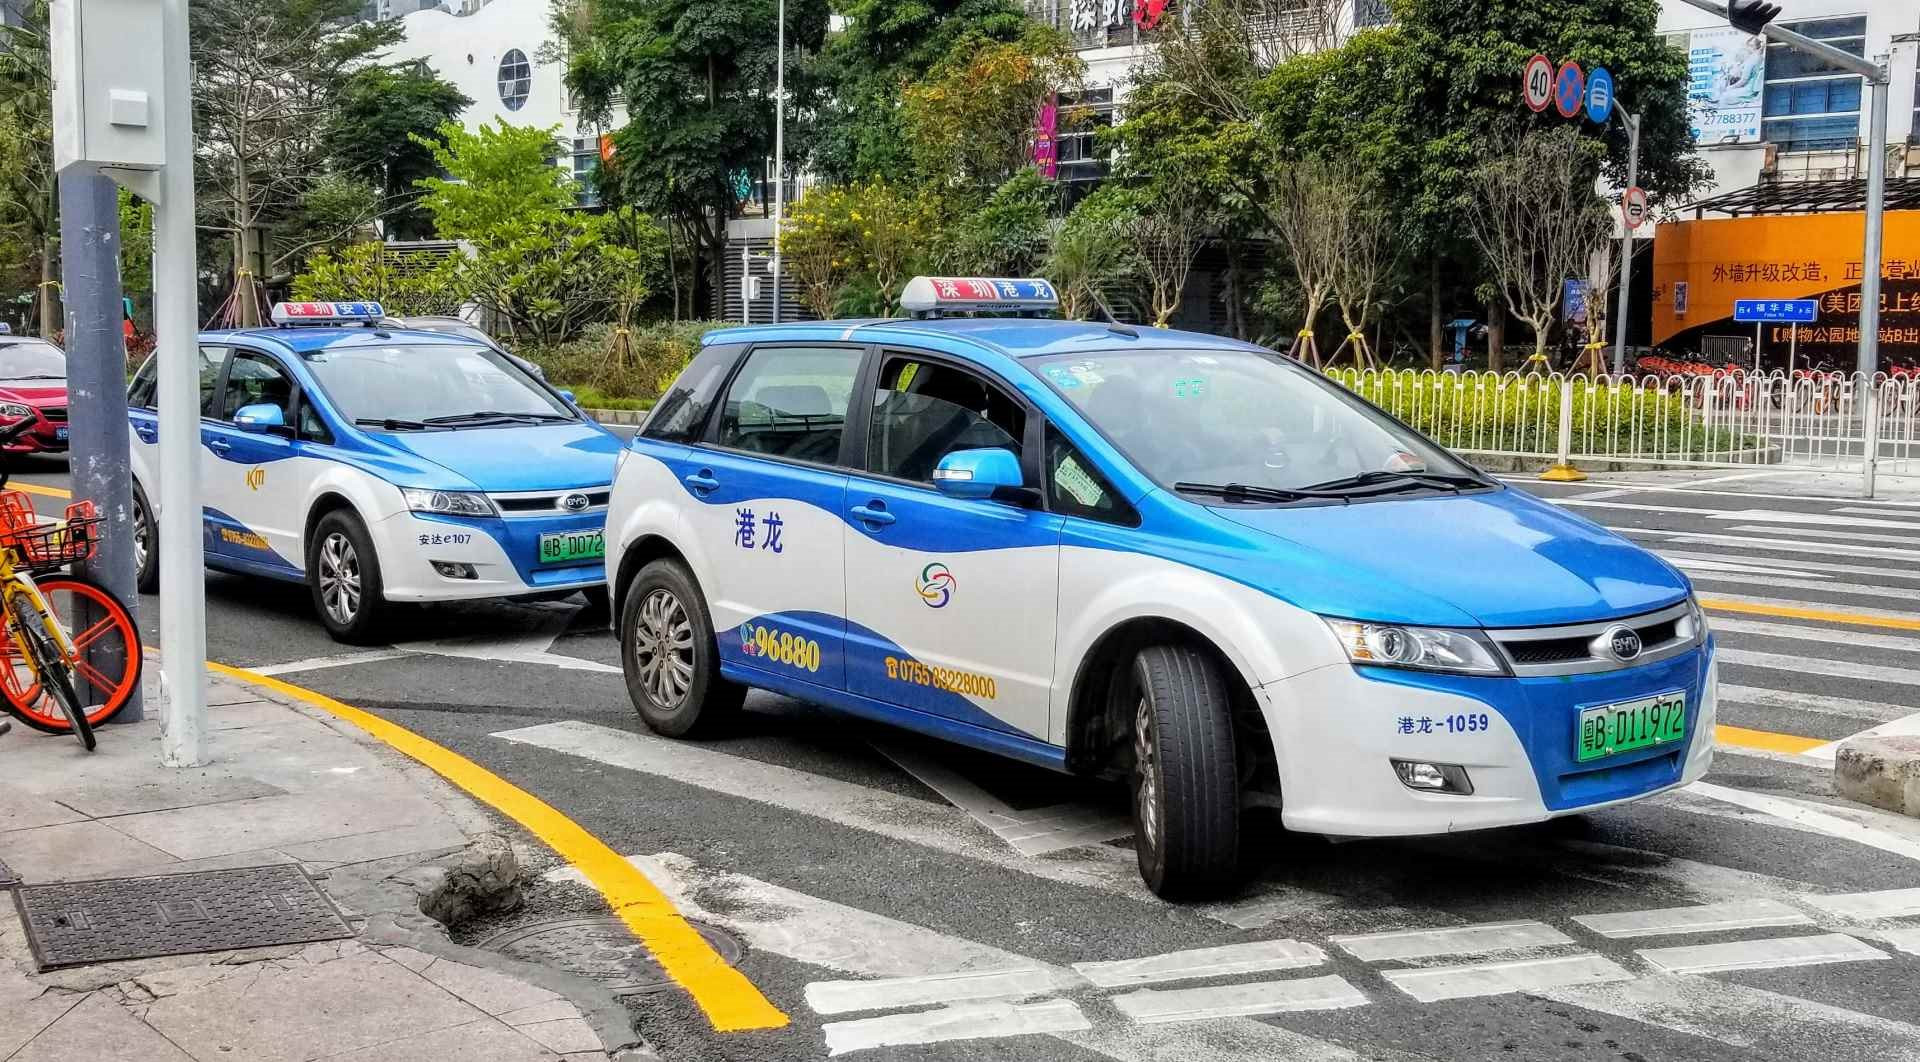 Quốc gia láng giềng Việt Nam có thị trường taxi công nghệ 130 tỷ USD, hướng tới mục tiêu 100% taxi điện